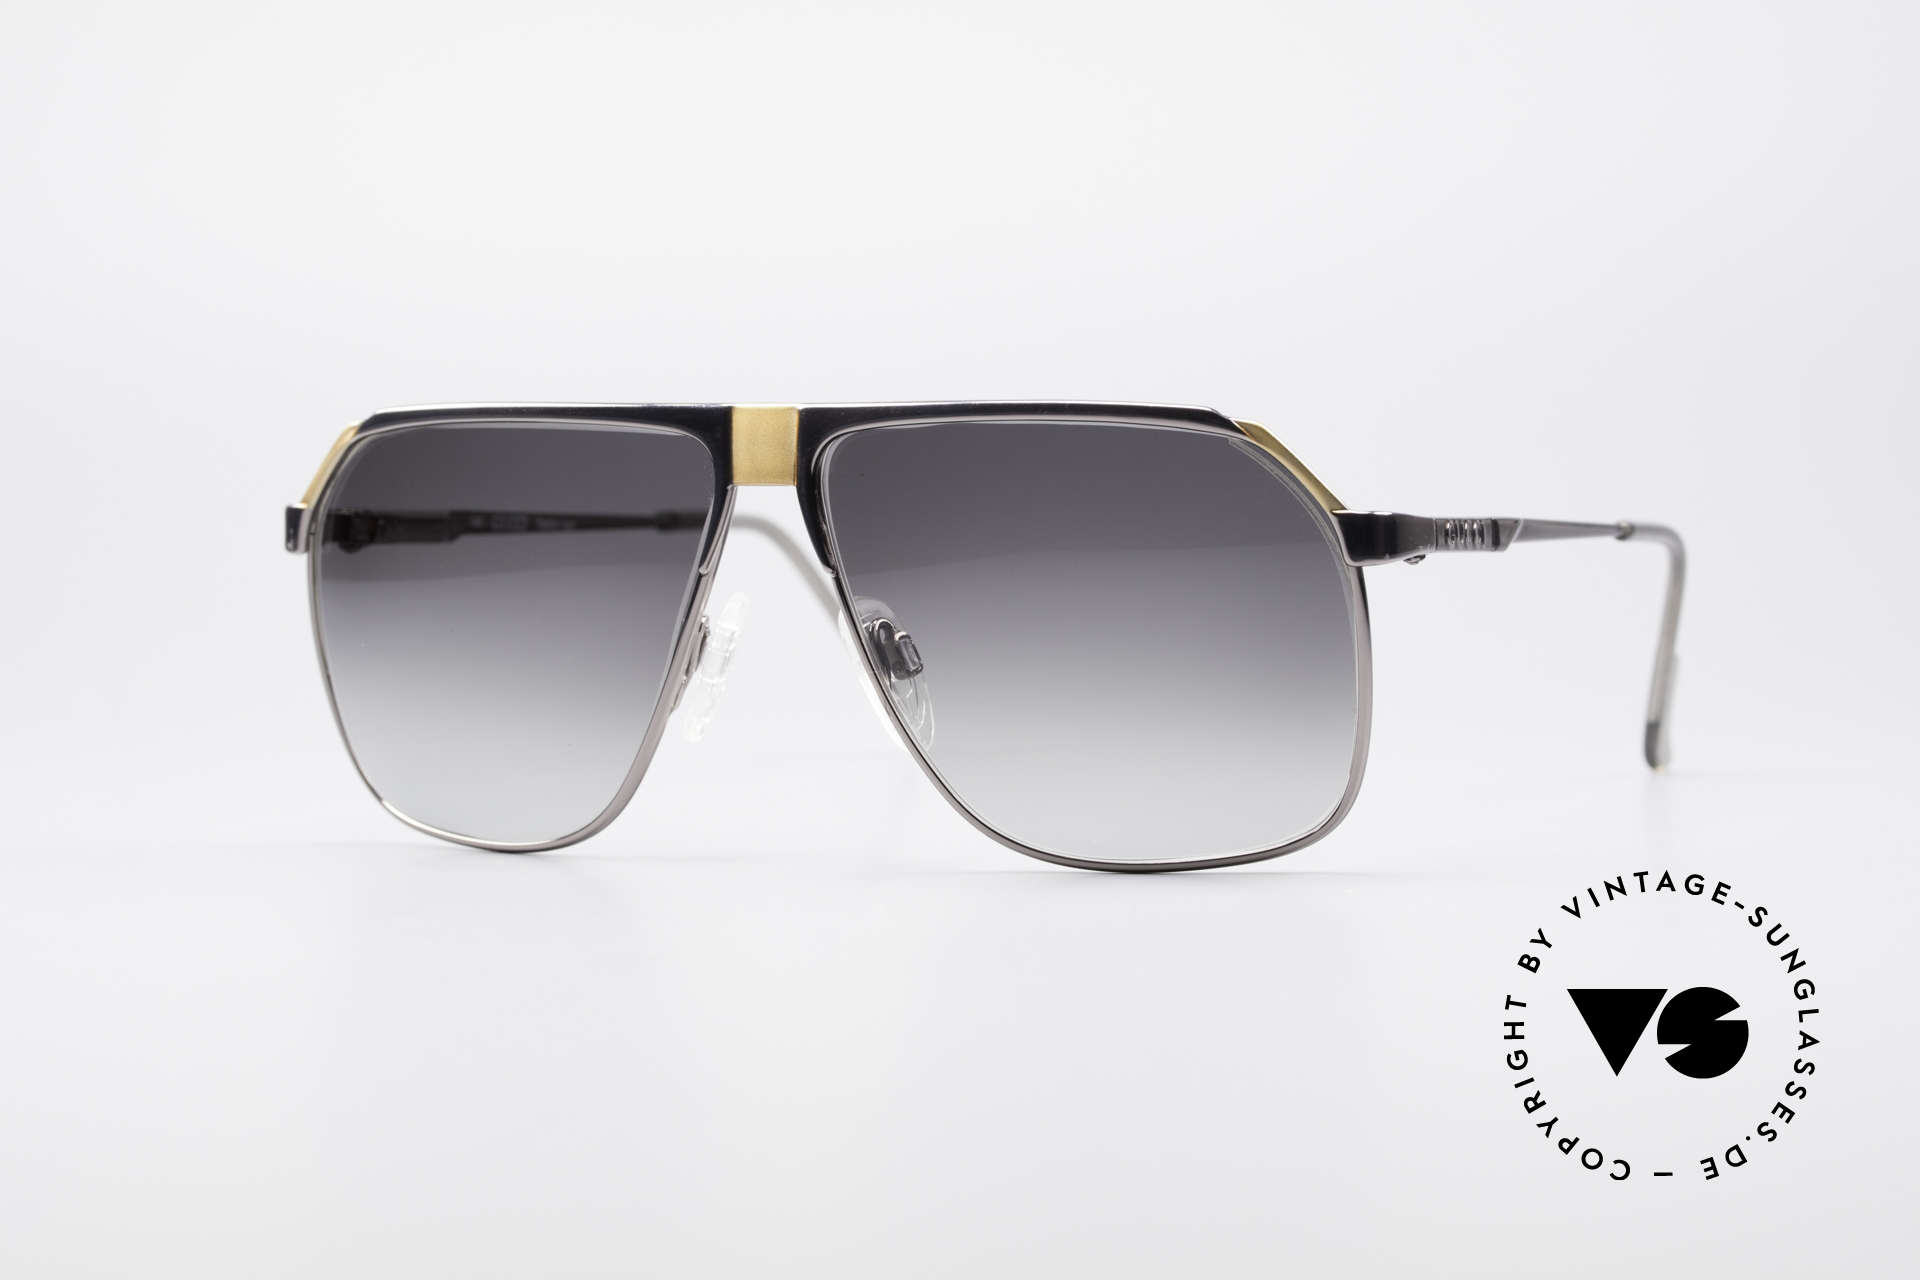 gucci sunglasses for men